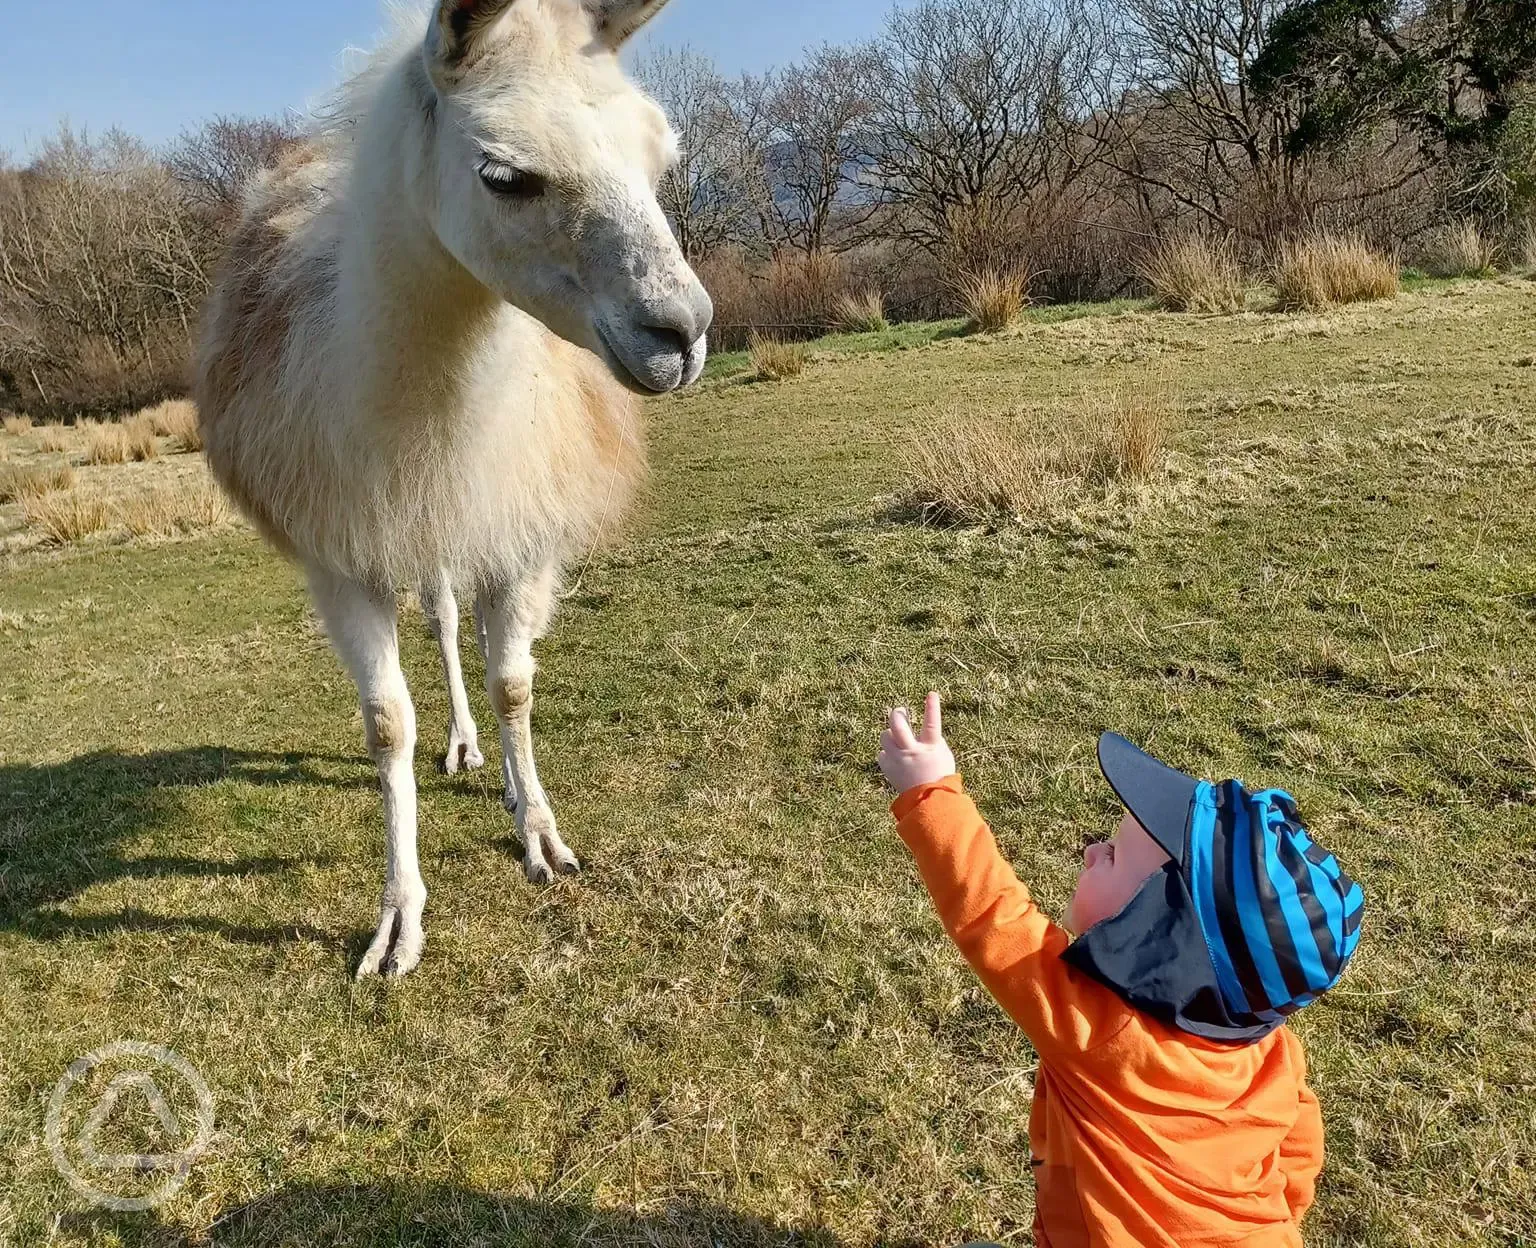 Kids love llamas